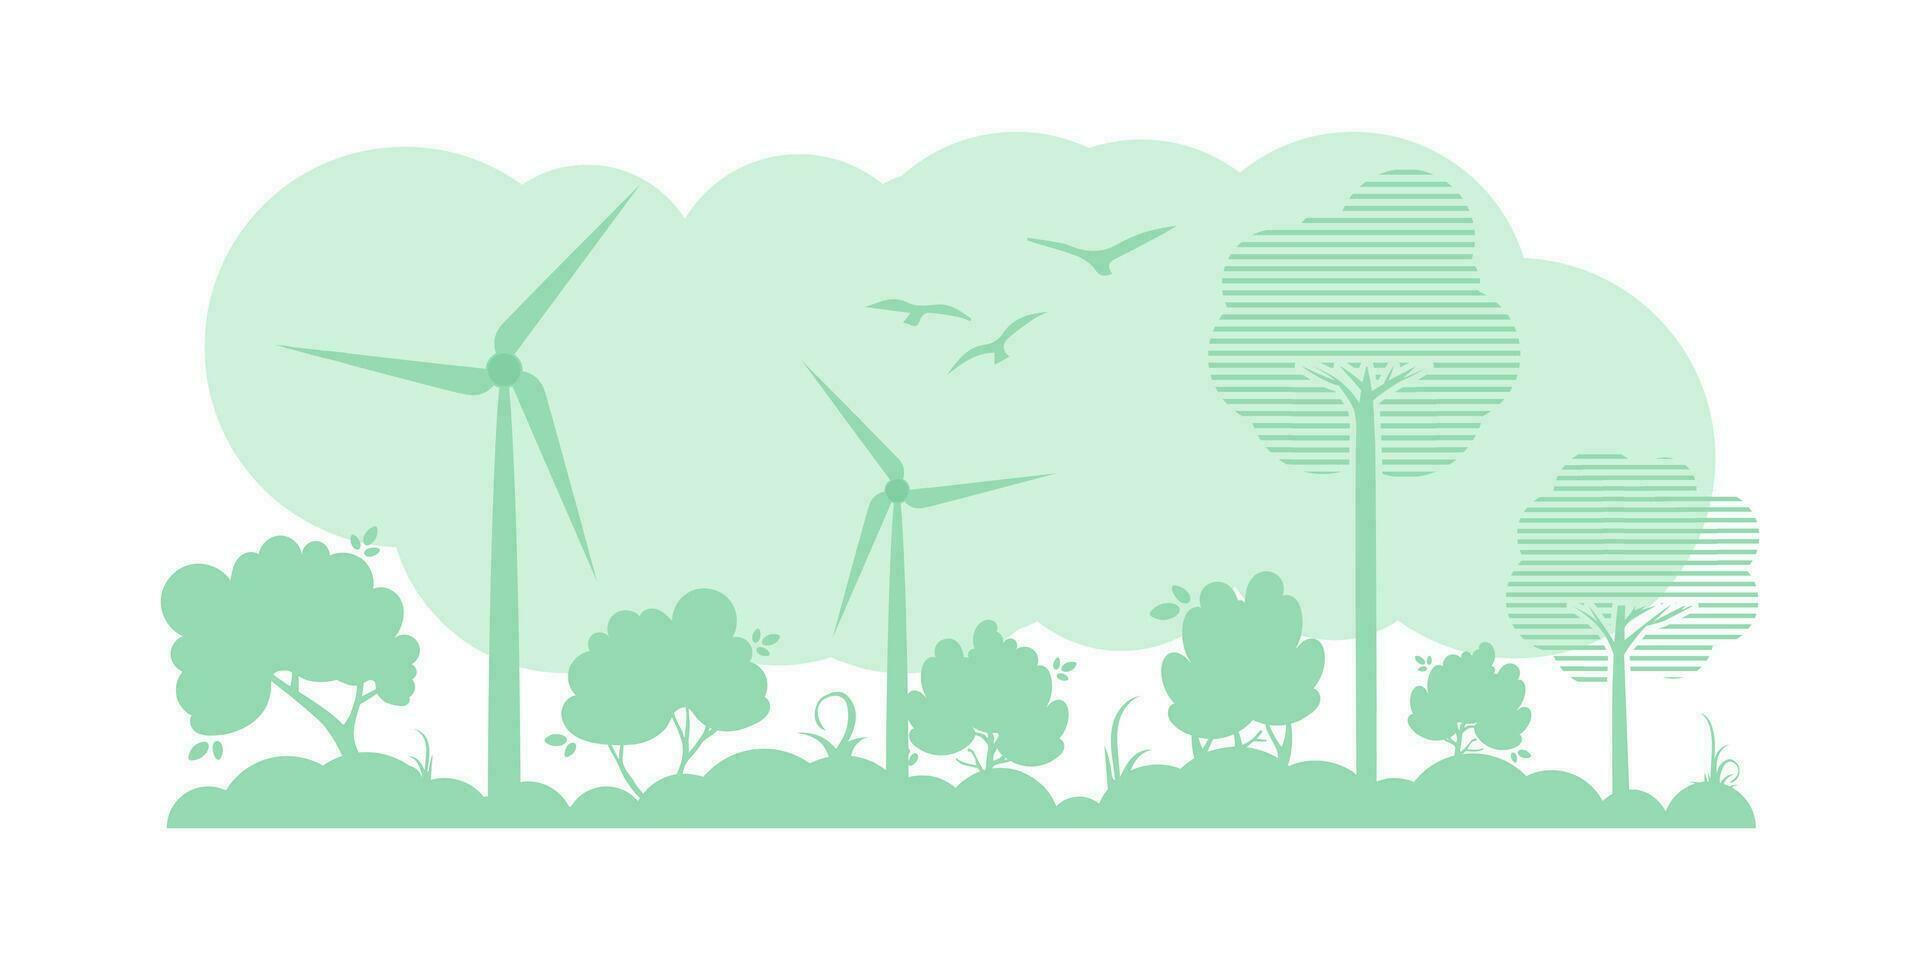 grön bakgrund på de tema av ekologi och grön energi. vektor illustration.